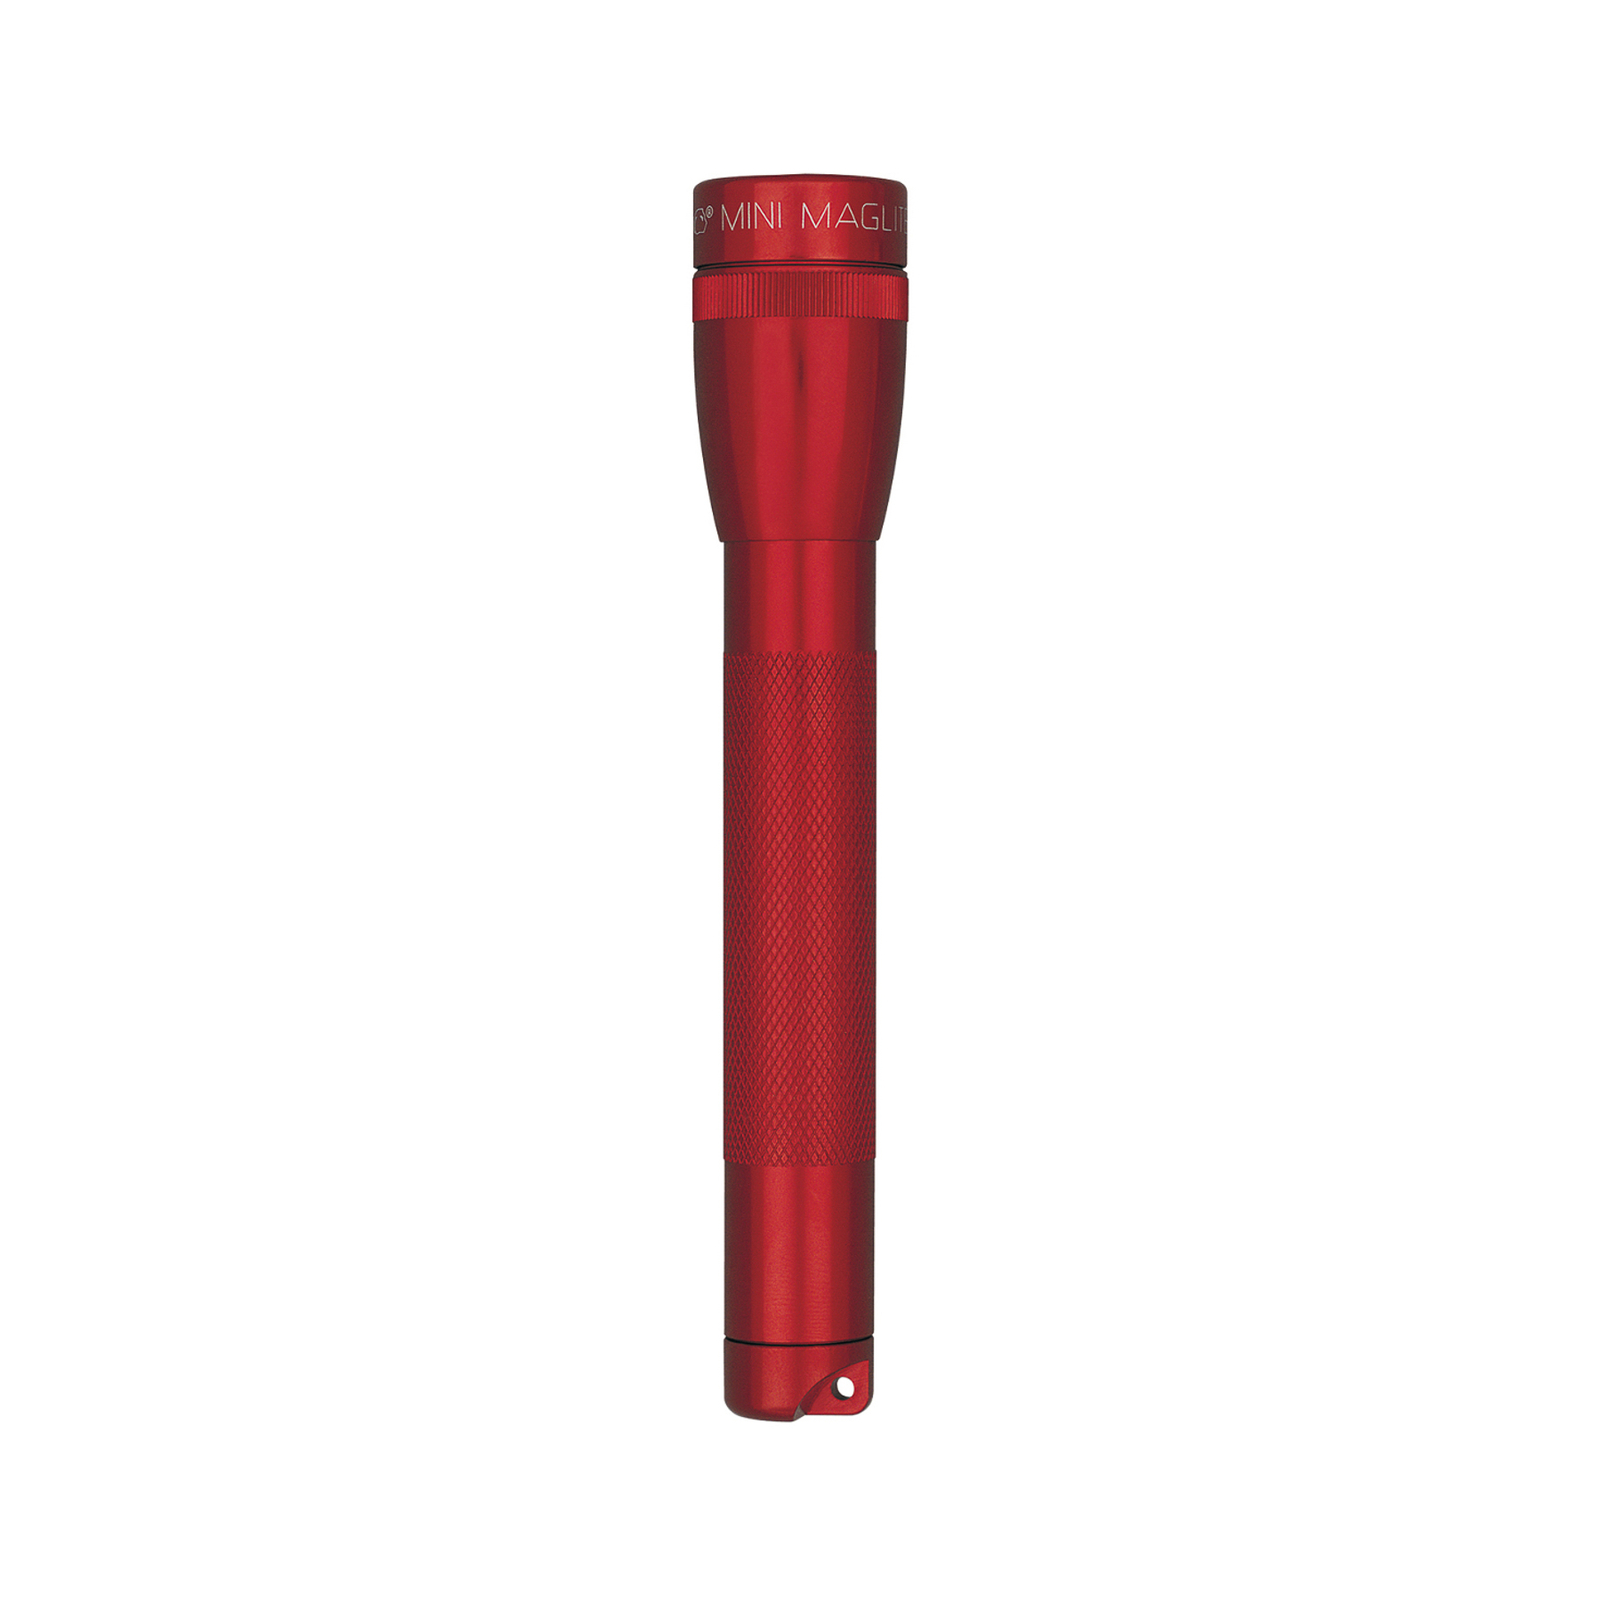 Maglite lampe de poche au xénon Mini, 2-Cell AA, avec Box, rouge